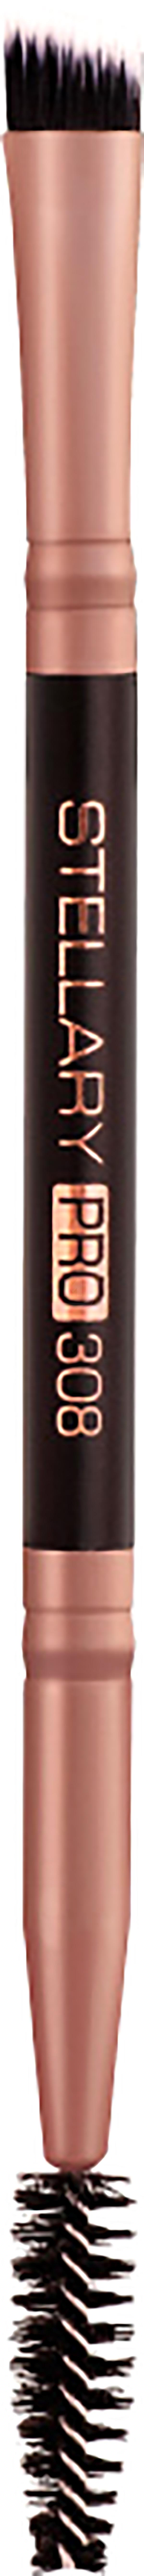 Кисть для бровей STELLARY Pro Brush Duo №308 двухсторонняя, синтетическая, черная краска для бровей и ресниц color черная